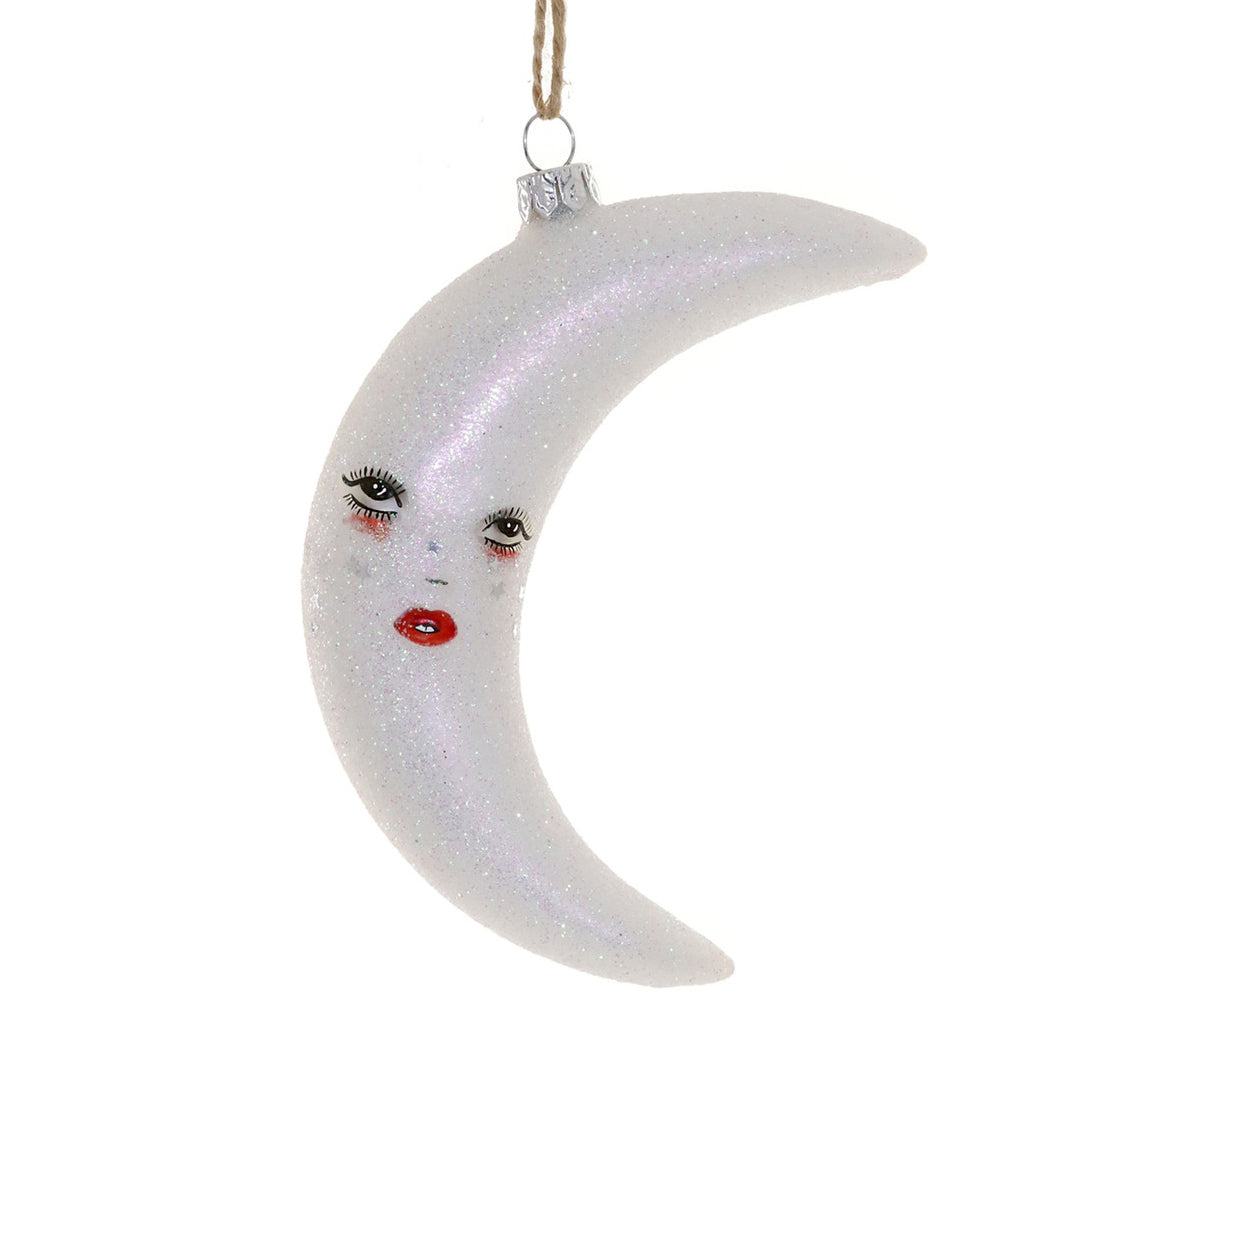 La Luna Ornament